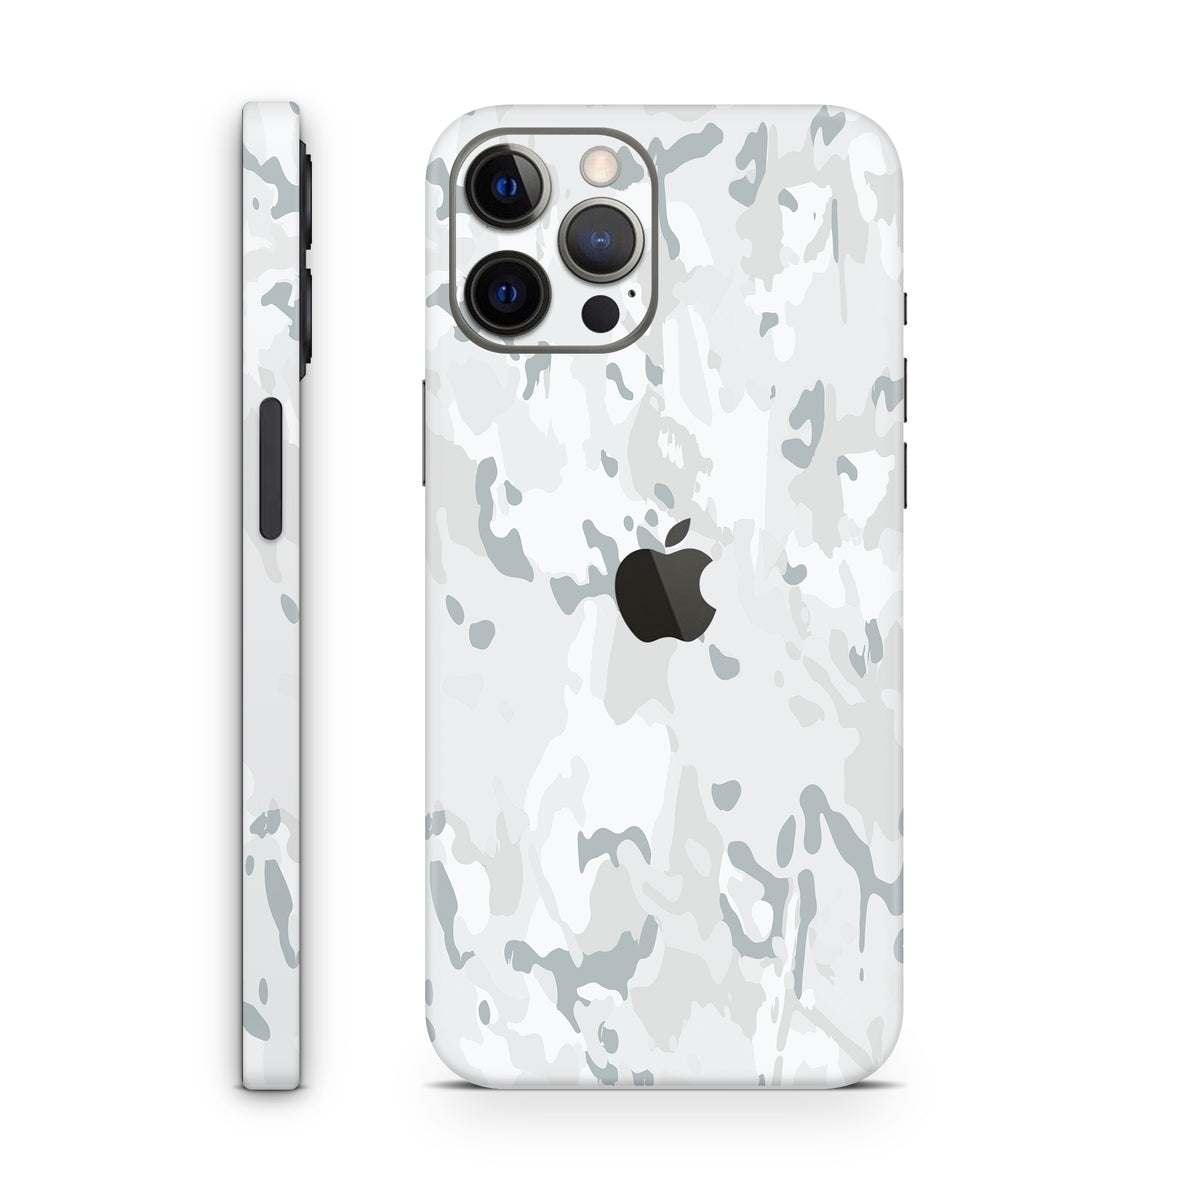 Arctic (iPhone Skin)